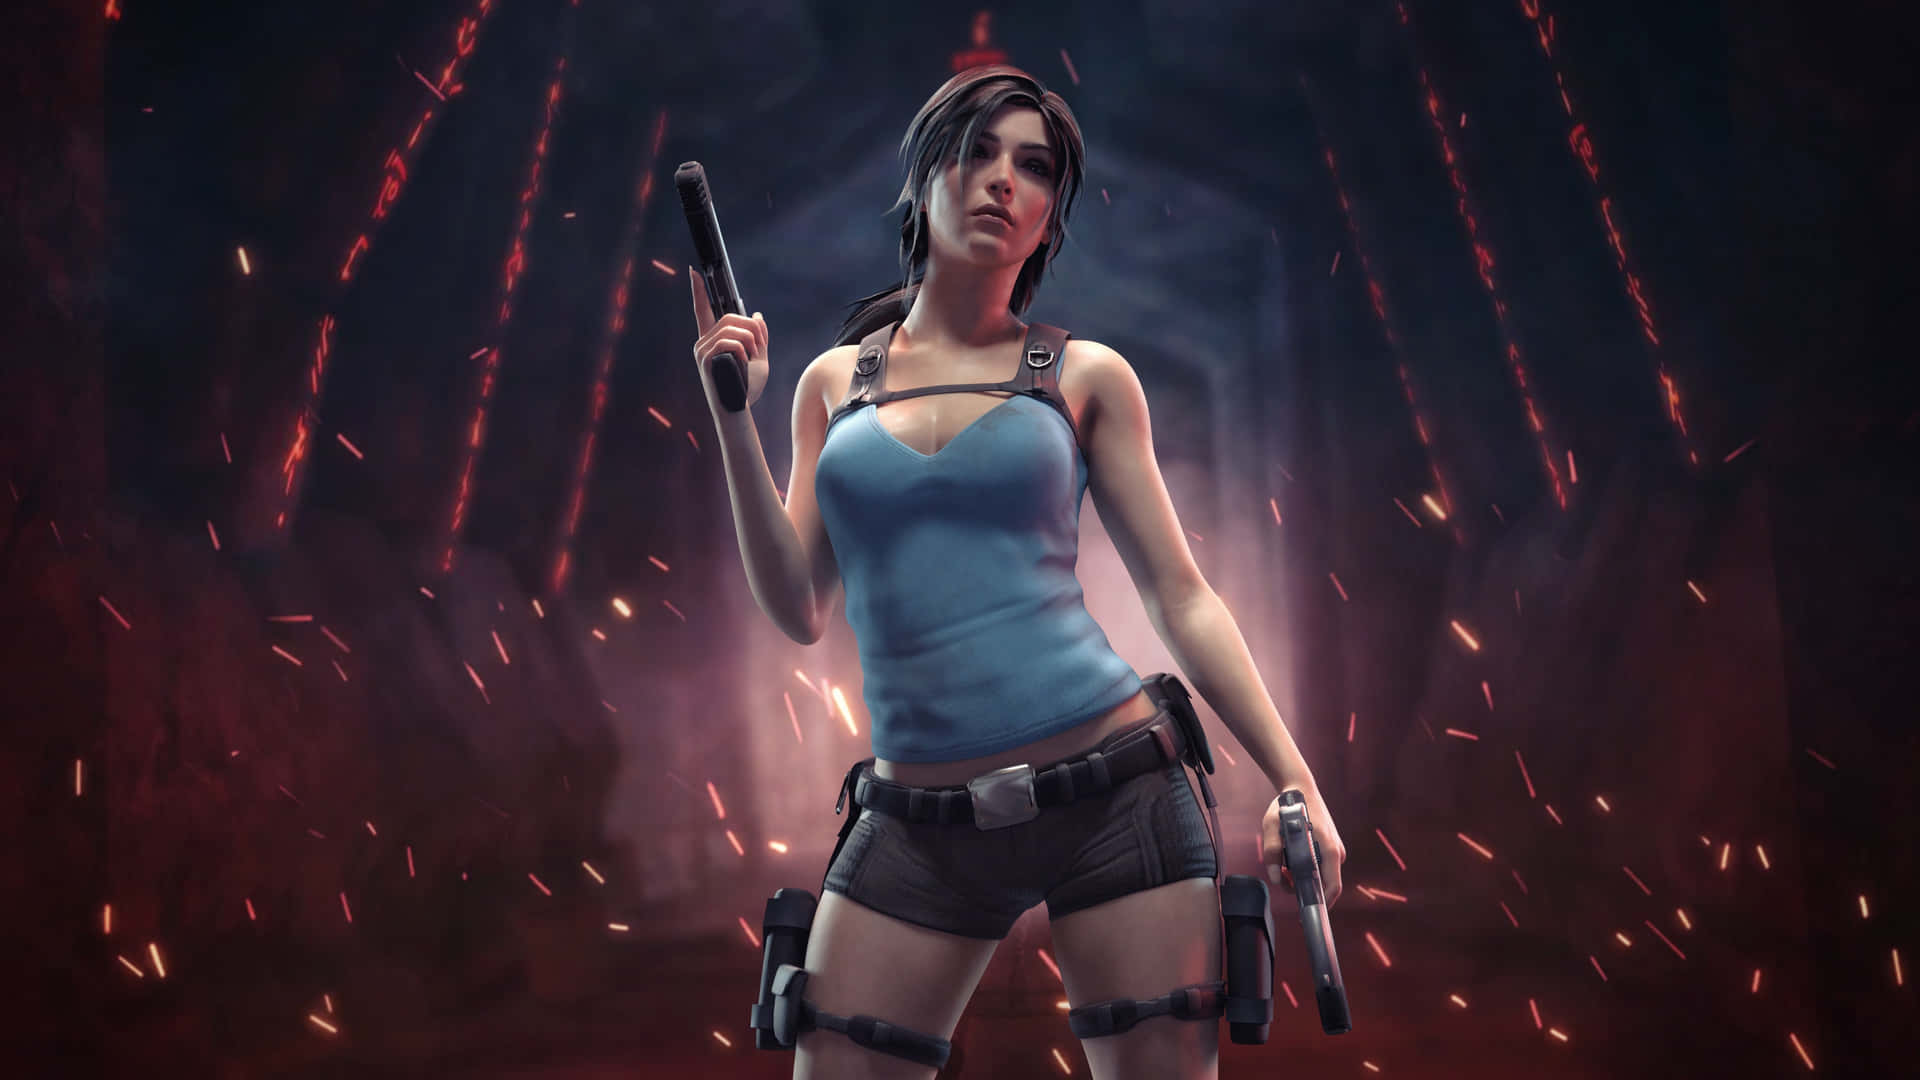 Lara Croft Action Pose Wallpaper